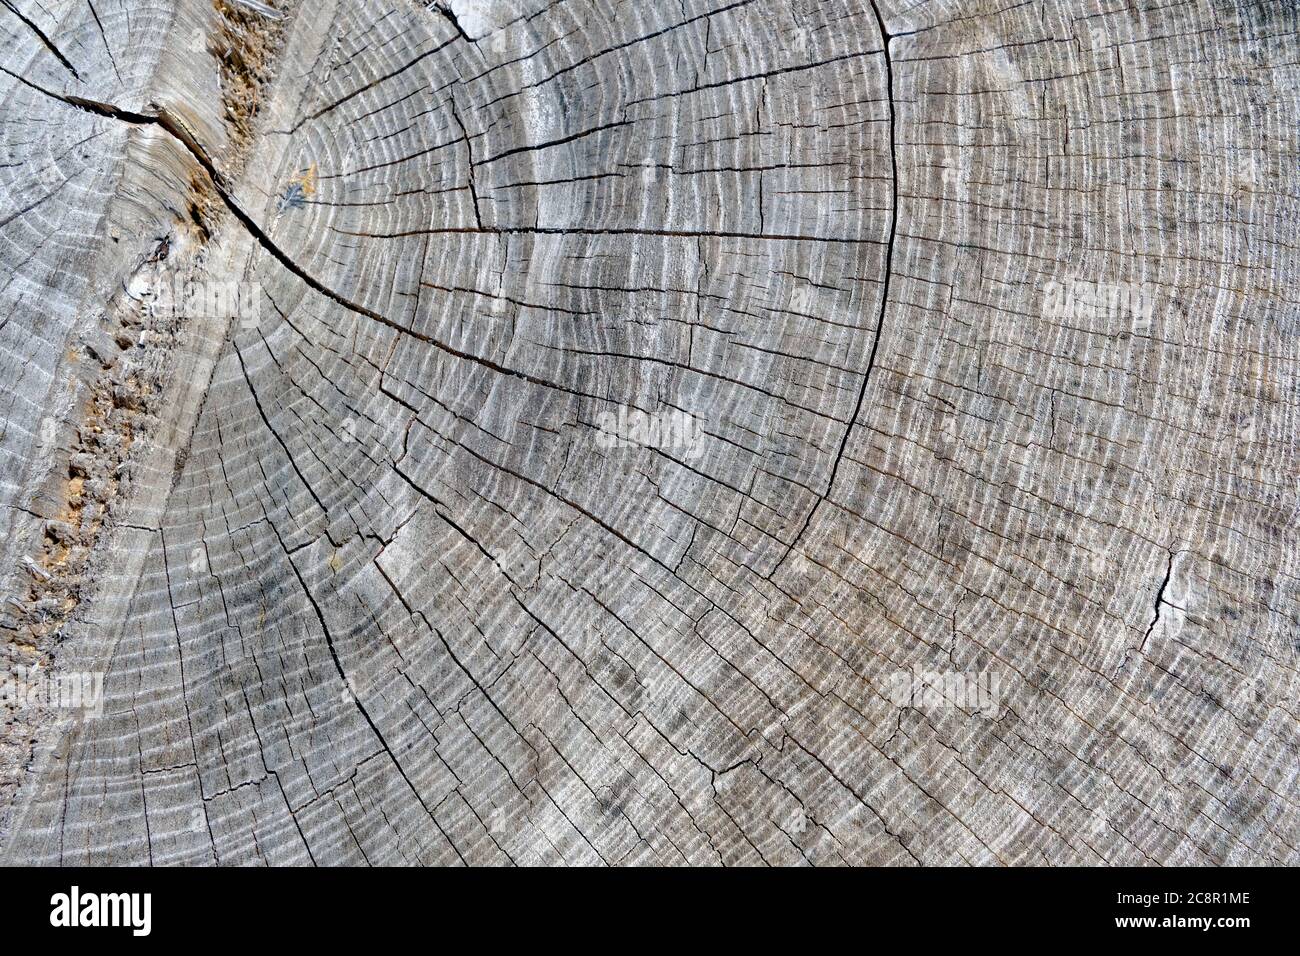 Struttura in legno. Tronco di albero grande tagliato con un sacco di piccole crepe e colore grigio invecchiato. Il moncone mostra gli anelli di definizione dell'età di un albero. Foto Stock